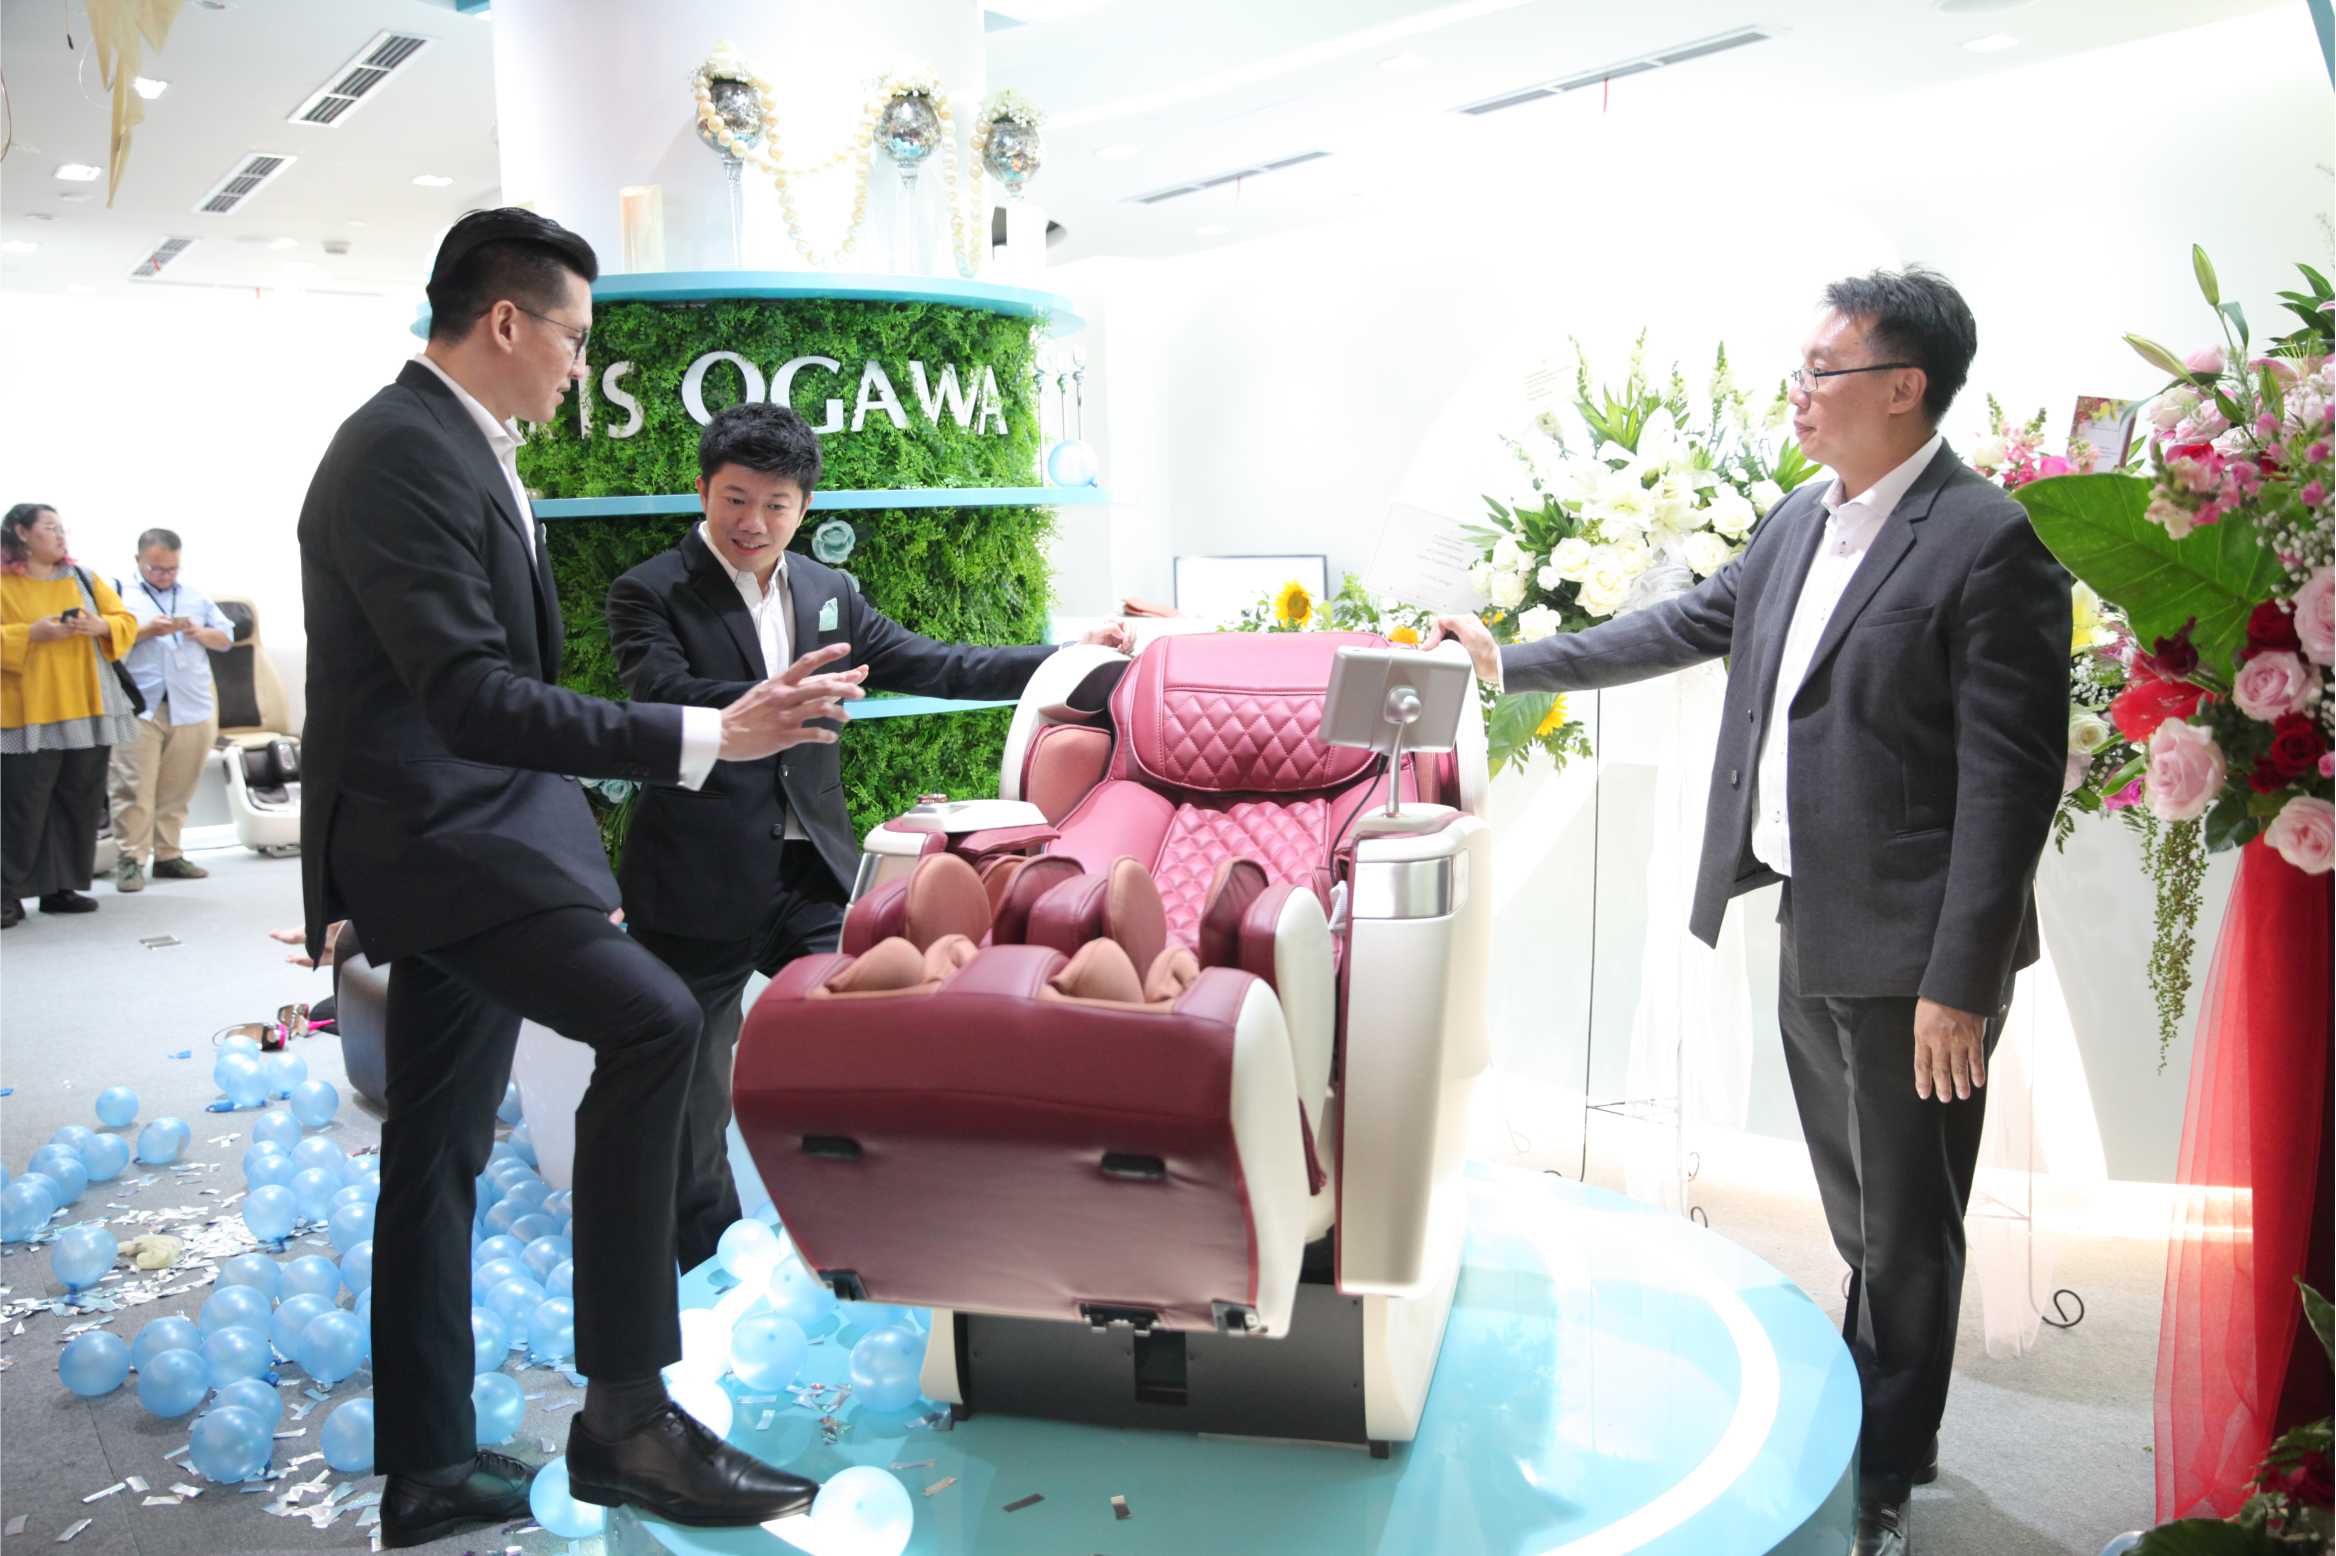 Ogawa Experience Center Hadir di Plaza Indonesia